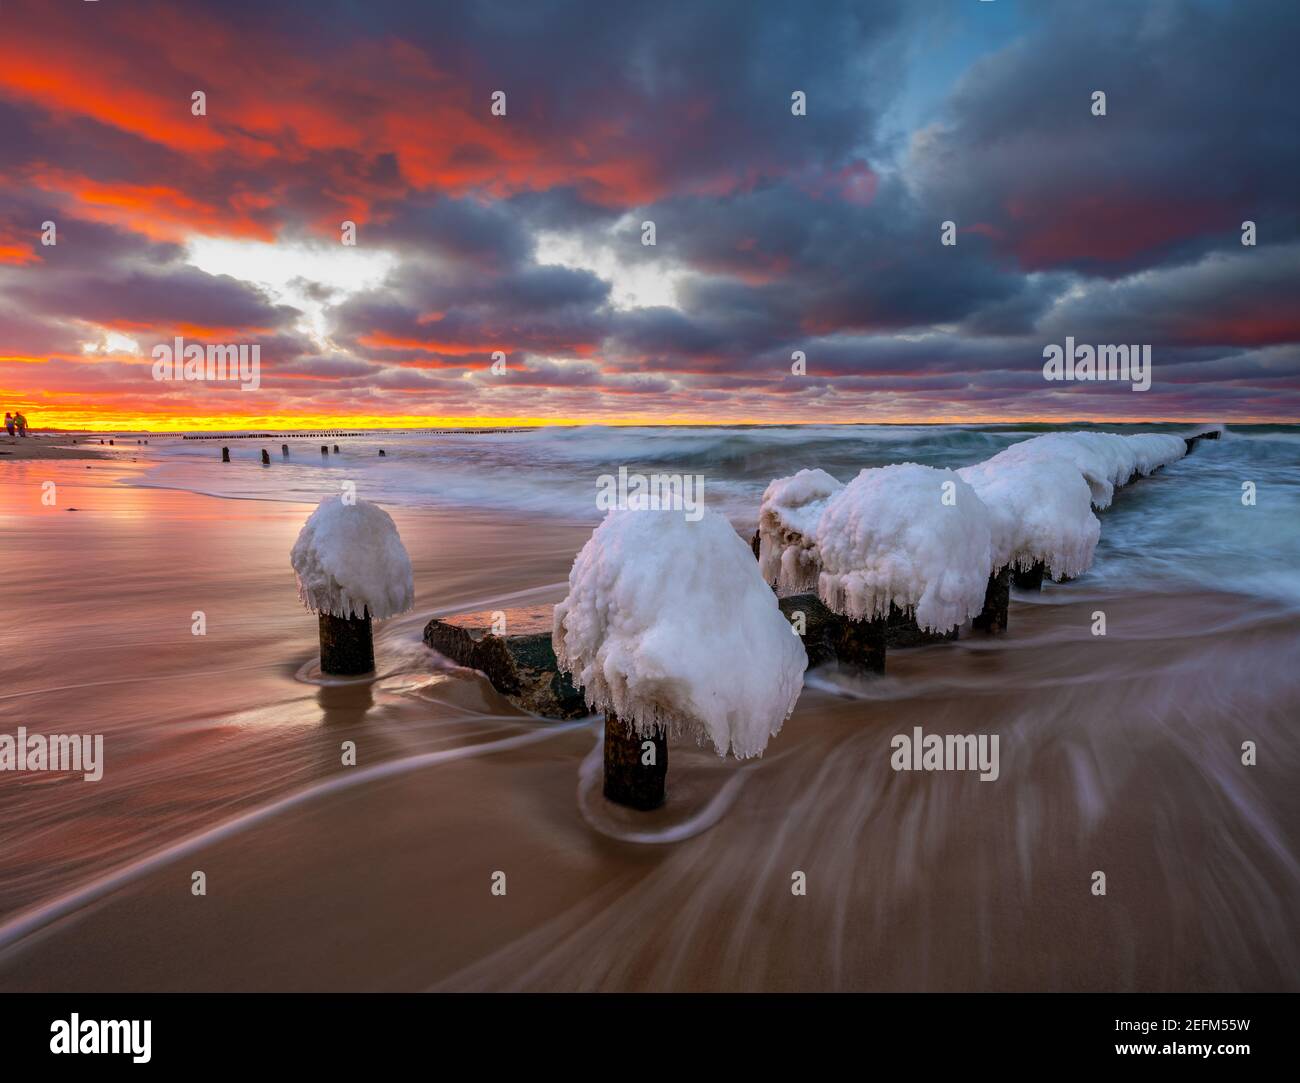 Bellissimo paesaggio invernale del mare. Frangiflutti di ghiaccio, onde e tramonti ardenti. Fotografia artistica. Foto Stock